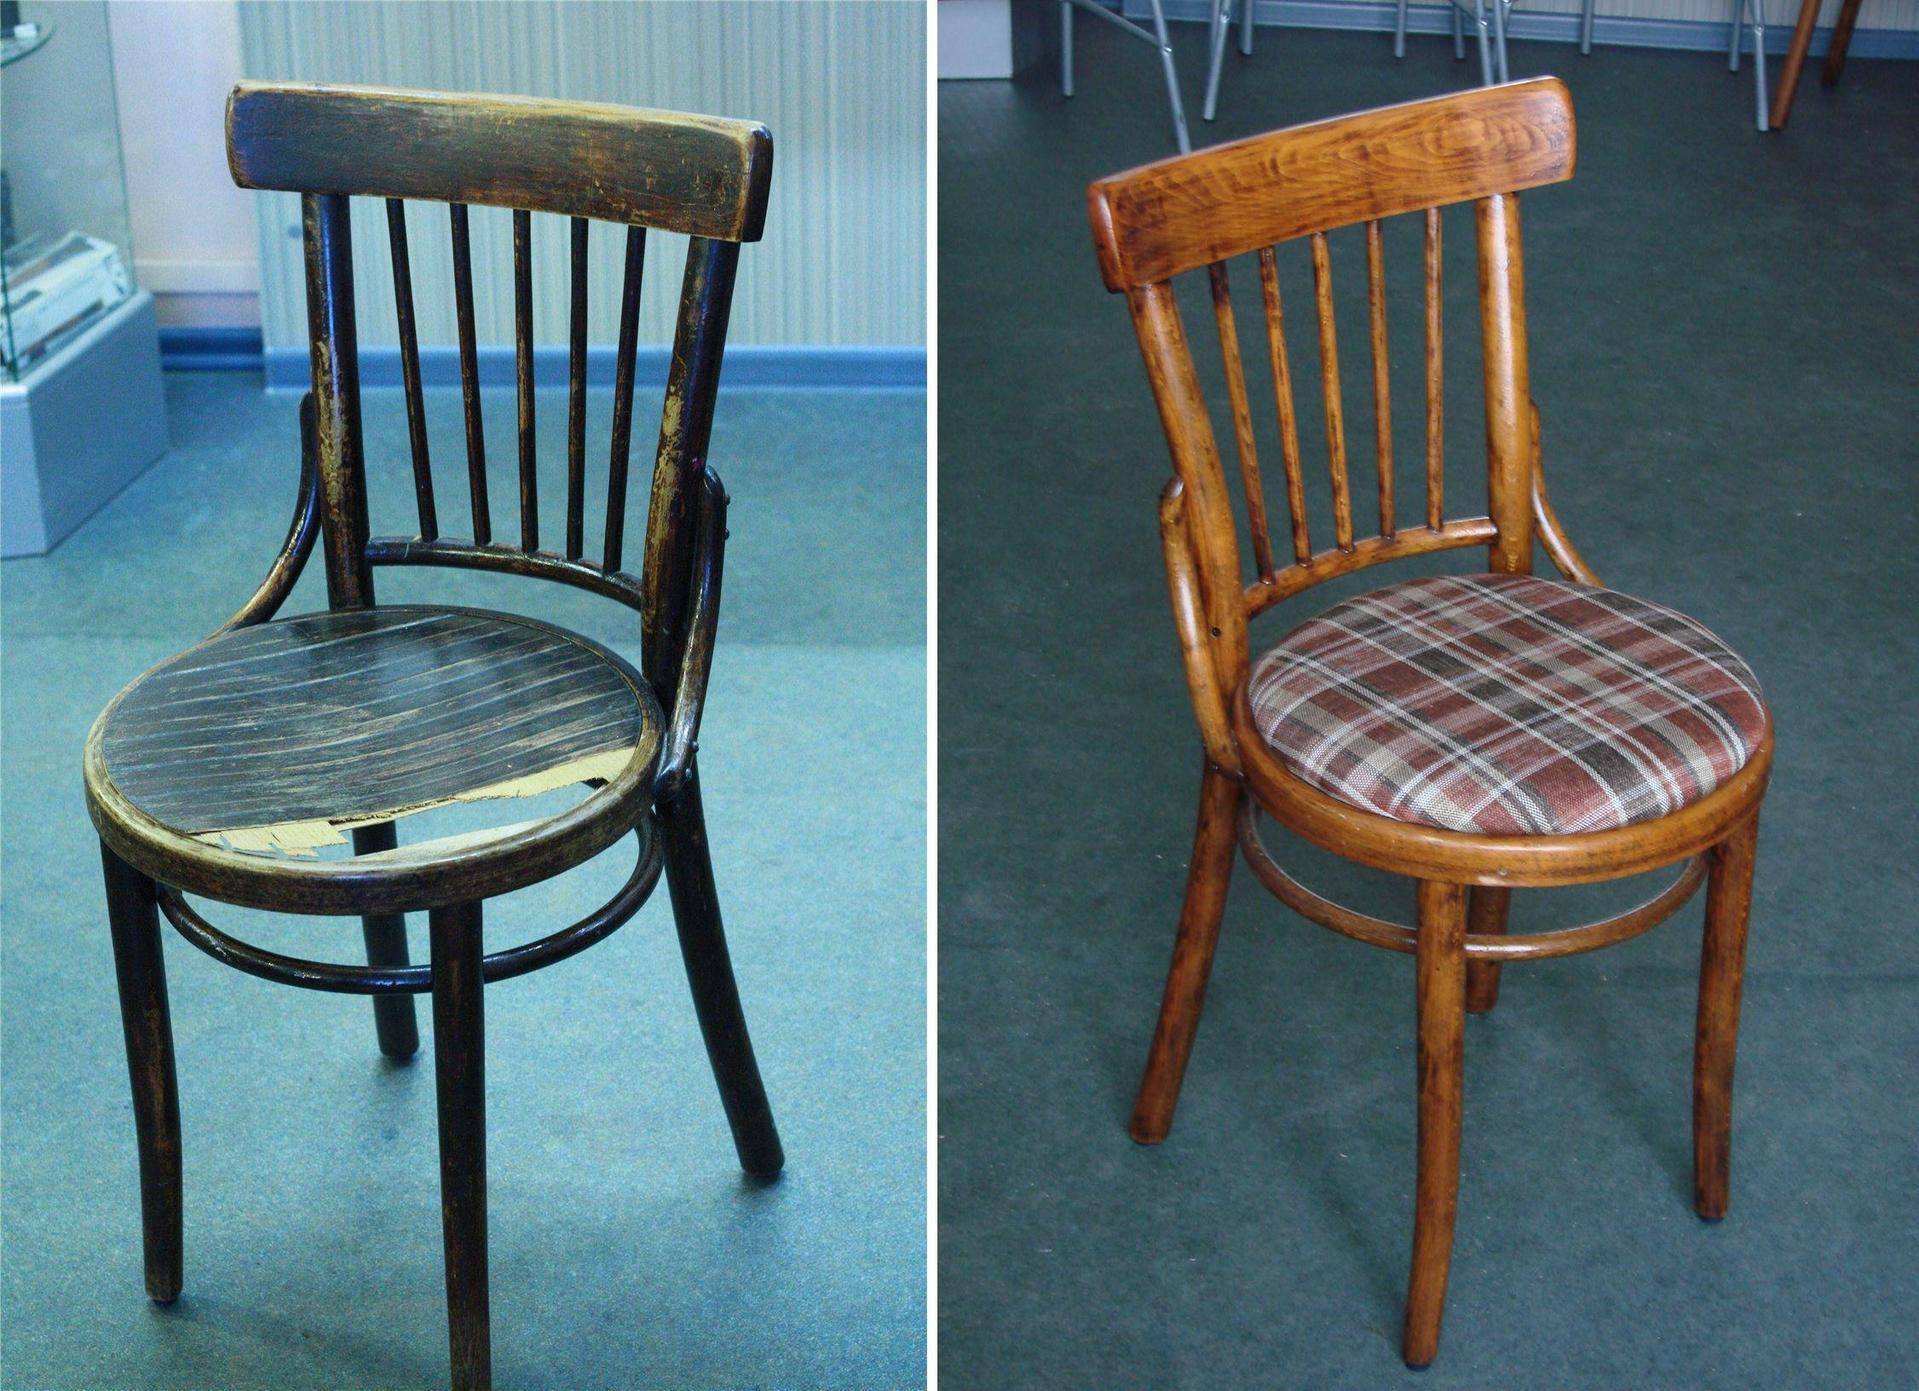 Как обновить старый стул - пошаговые инструкции по реставрации